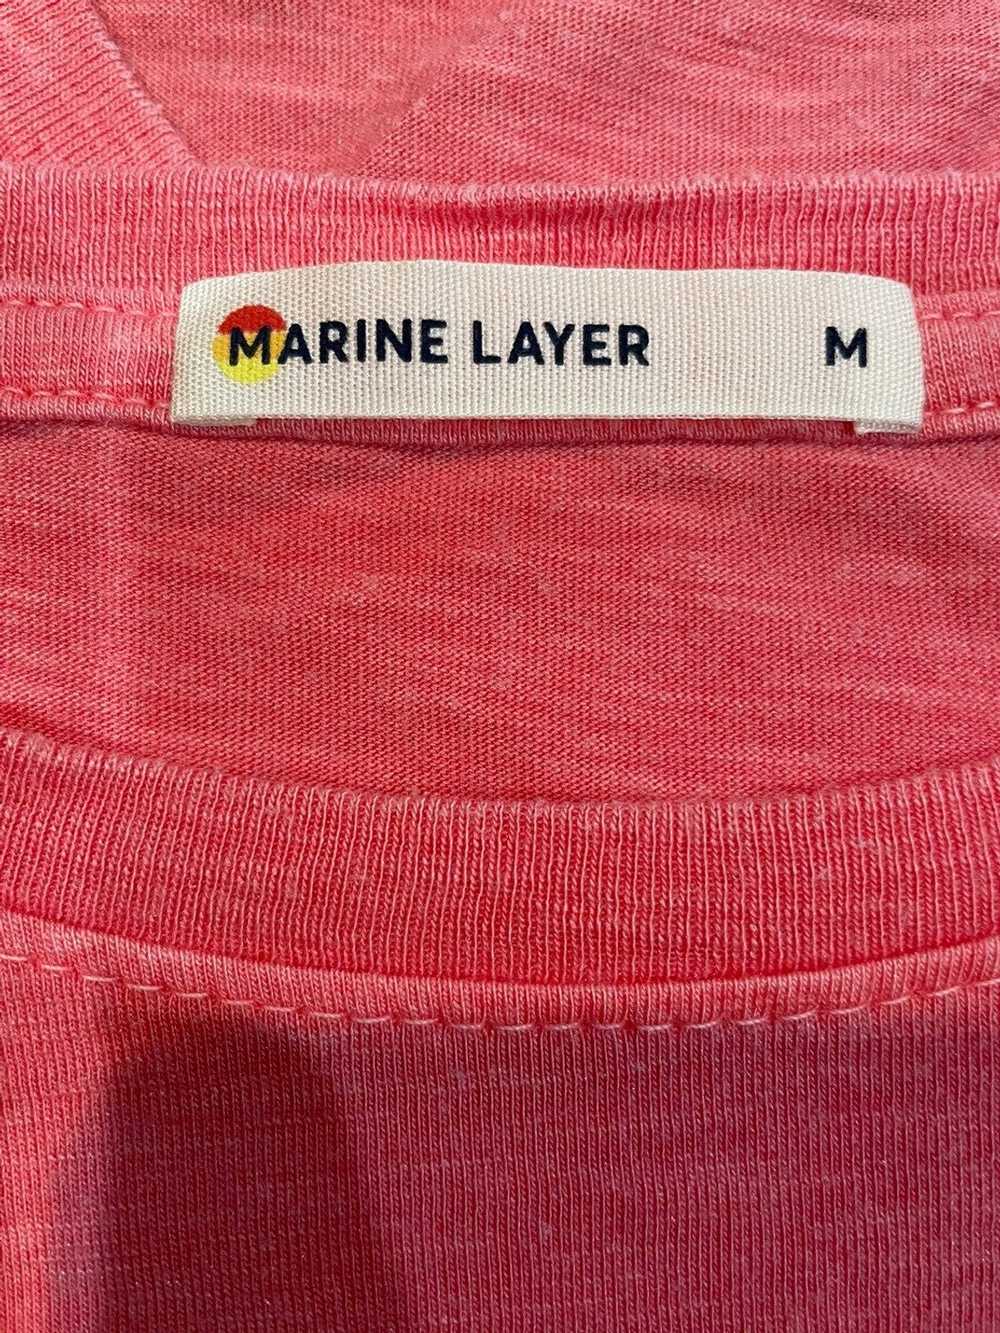 Marine Layer MARINE LAYER SWING TEE CHERRY RED M - image 6